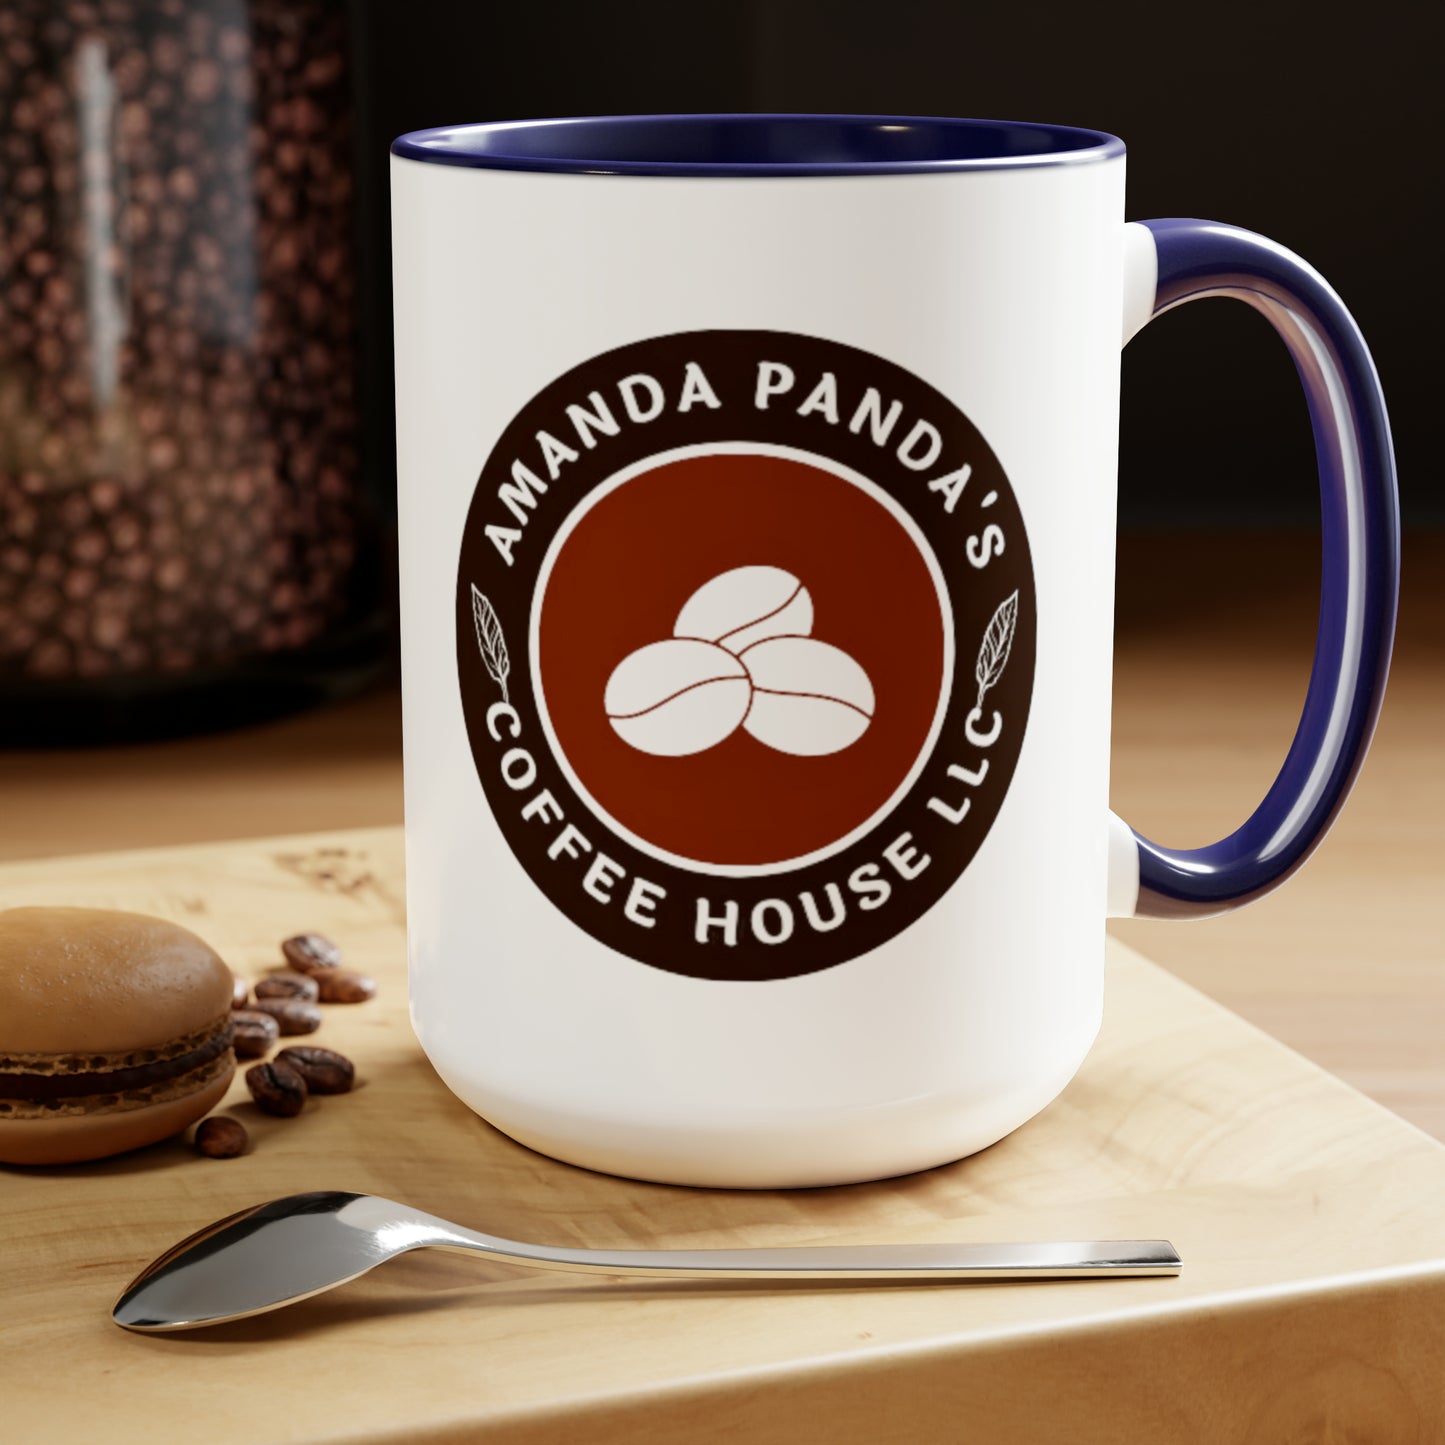 Amanda Pandas Coffee House LLC V1 Tazas de café, 15 oz